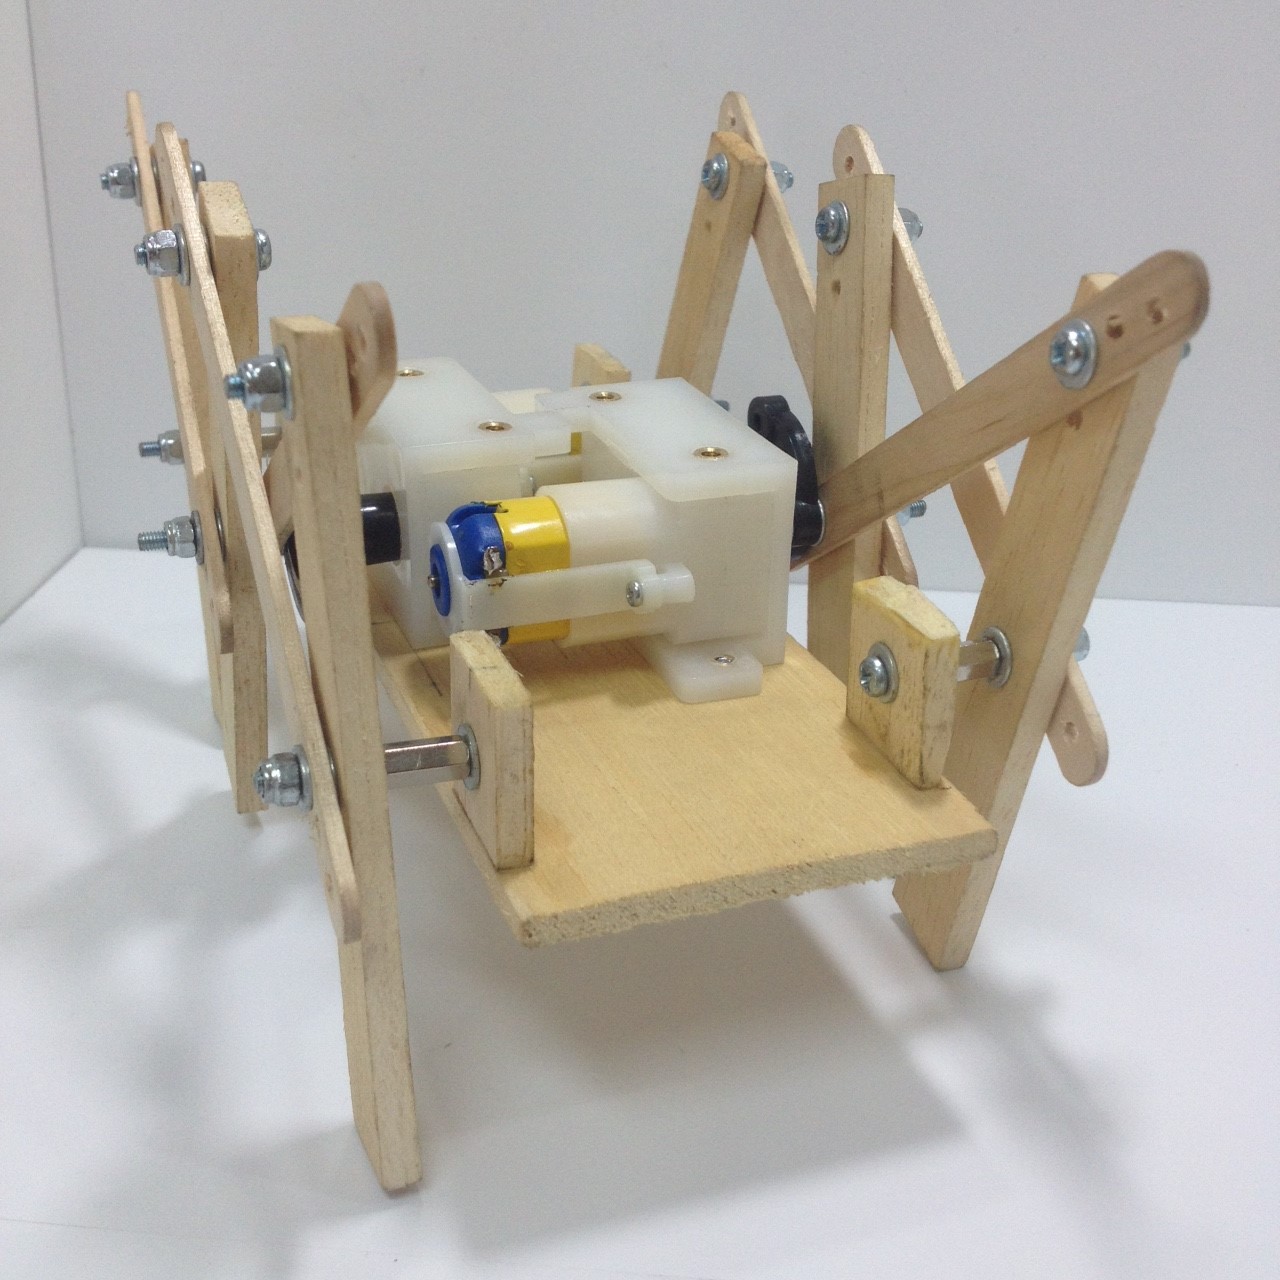 ชุดคิตหุ่นเดินหกขาโครงสร้างไม้ รุ่น Modify ไม่ประกอบ(ไม่รวมรีโมท)